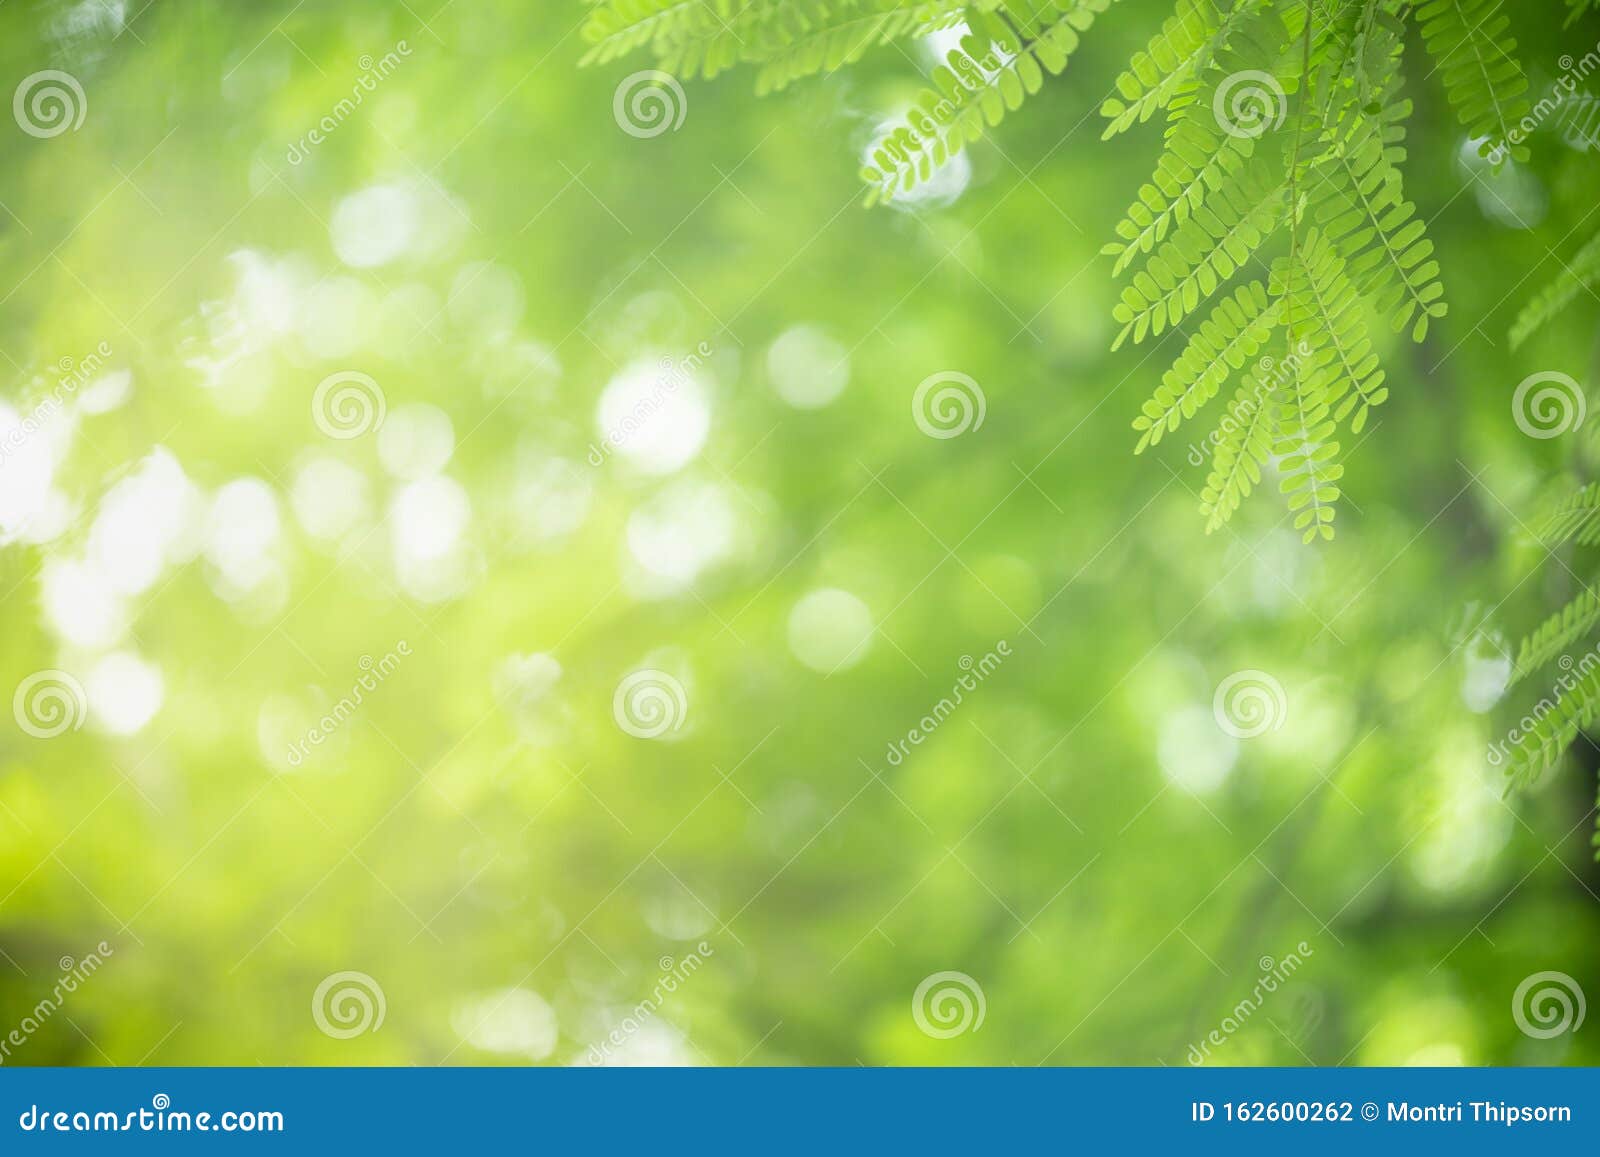 Những chiếc lá xanh tươi nổi bật trên nền bokeh xanh lá cây sẽ khiến cho trái tim bạn cảm thấy bình yên và thư giãn. Hãy ngắm nhìn và cho phép giải phóng tất cả những căng thẳng trong cuộc sống.